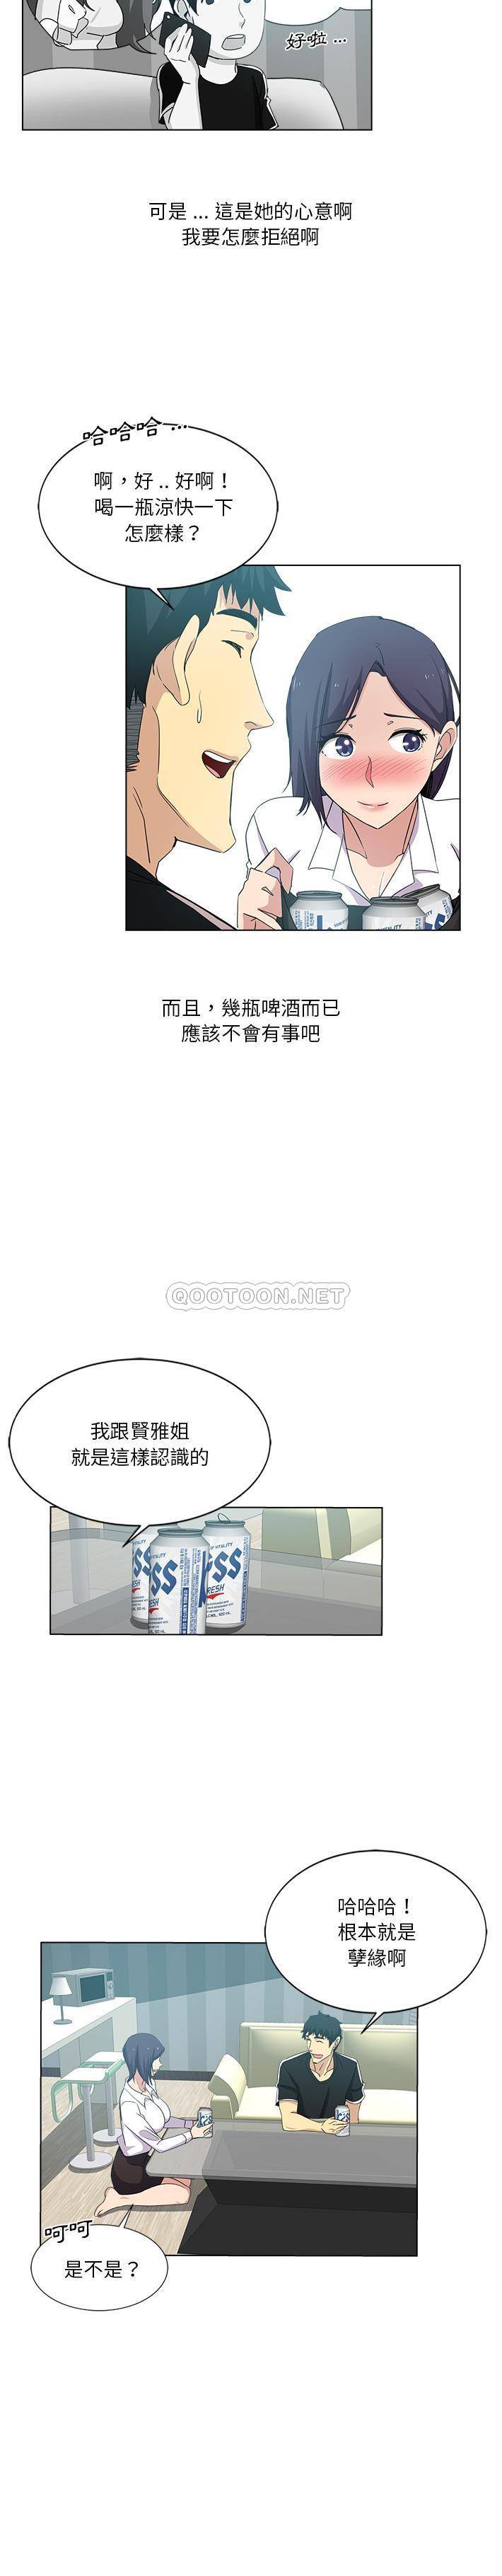 韩国污漫画 危險純友誼 第2话 13